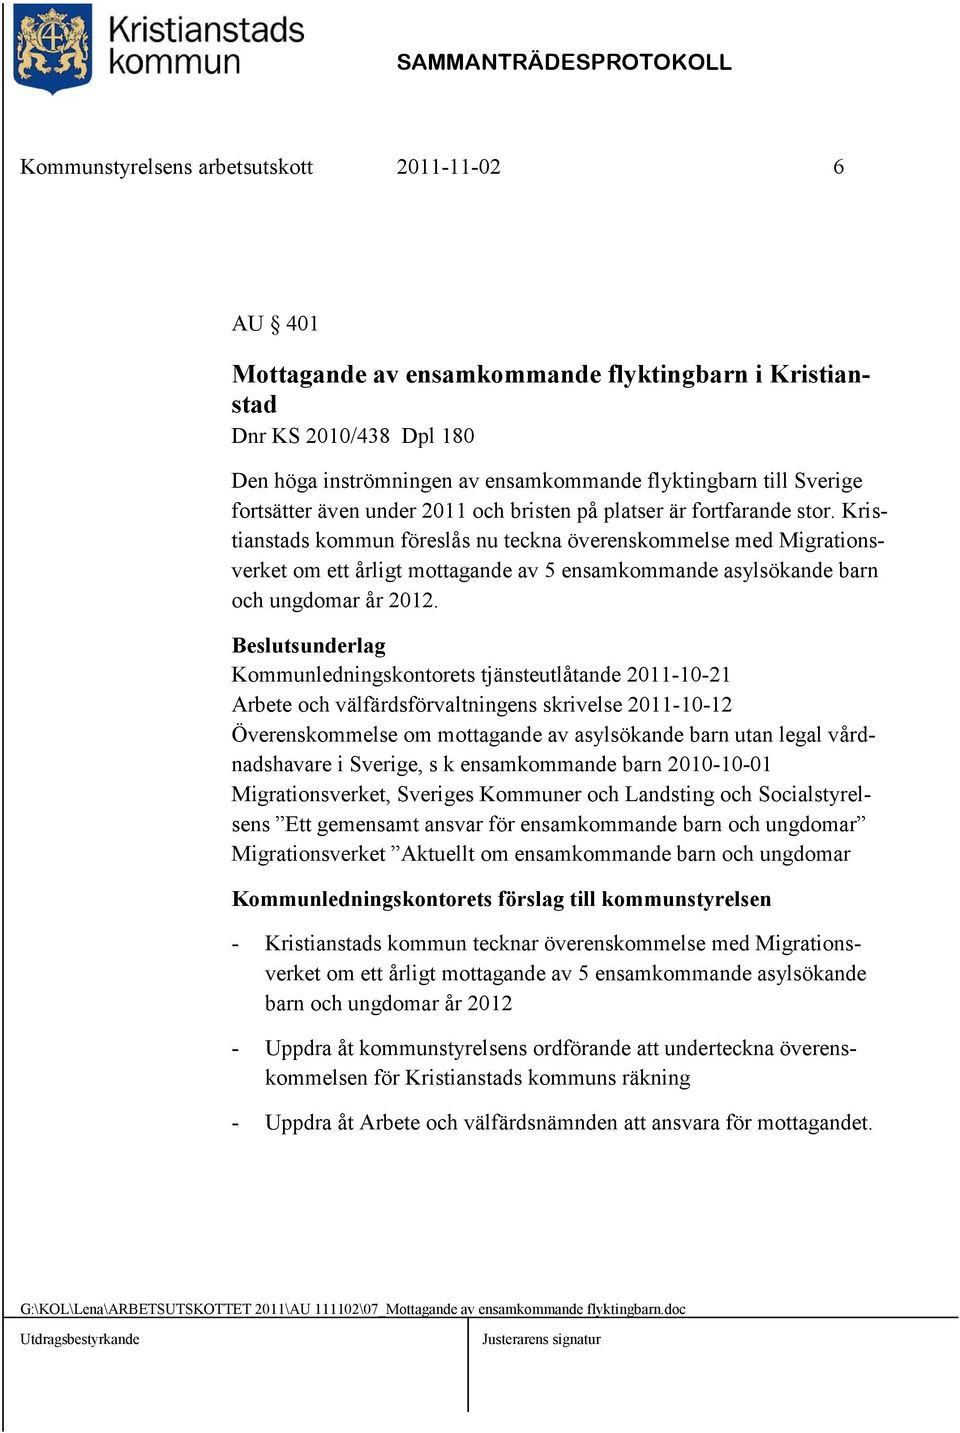 Kristianstads kommun föreslås nu teckna överenskommelse med Migrationsverket om ett årligt mottagande av 5 ensamkommande asylsökande barn och ungdomar år 2012.